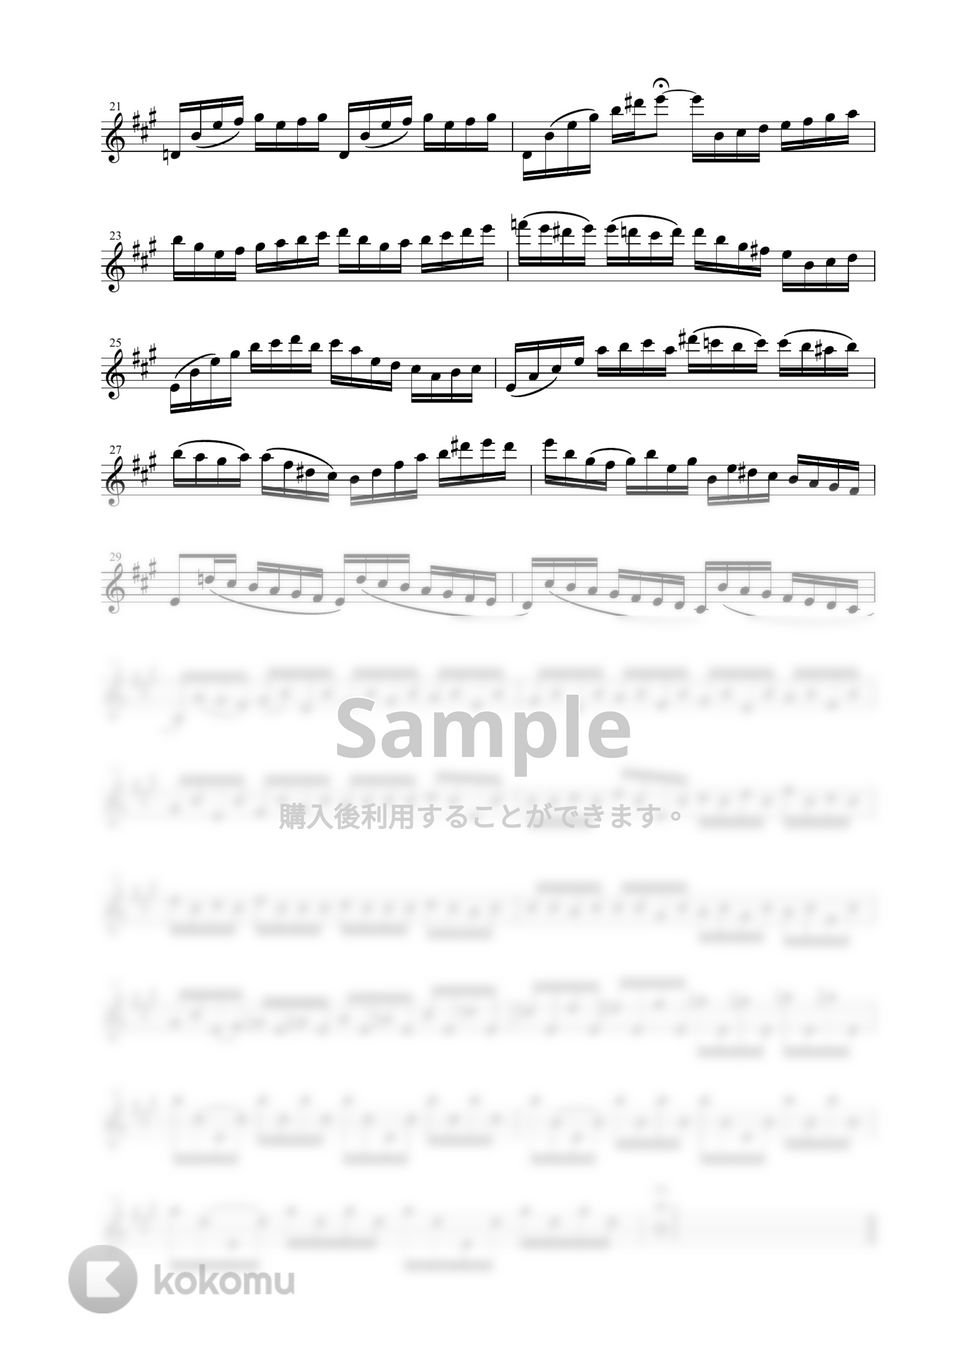 J.S.バッハ - チェロ組曲 より 第１番 プレリュード BWV1007 (テナーサックス独奏 / 無伴奏) by Zoe